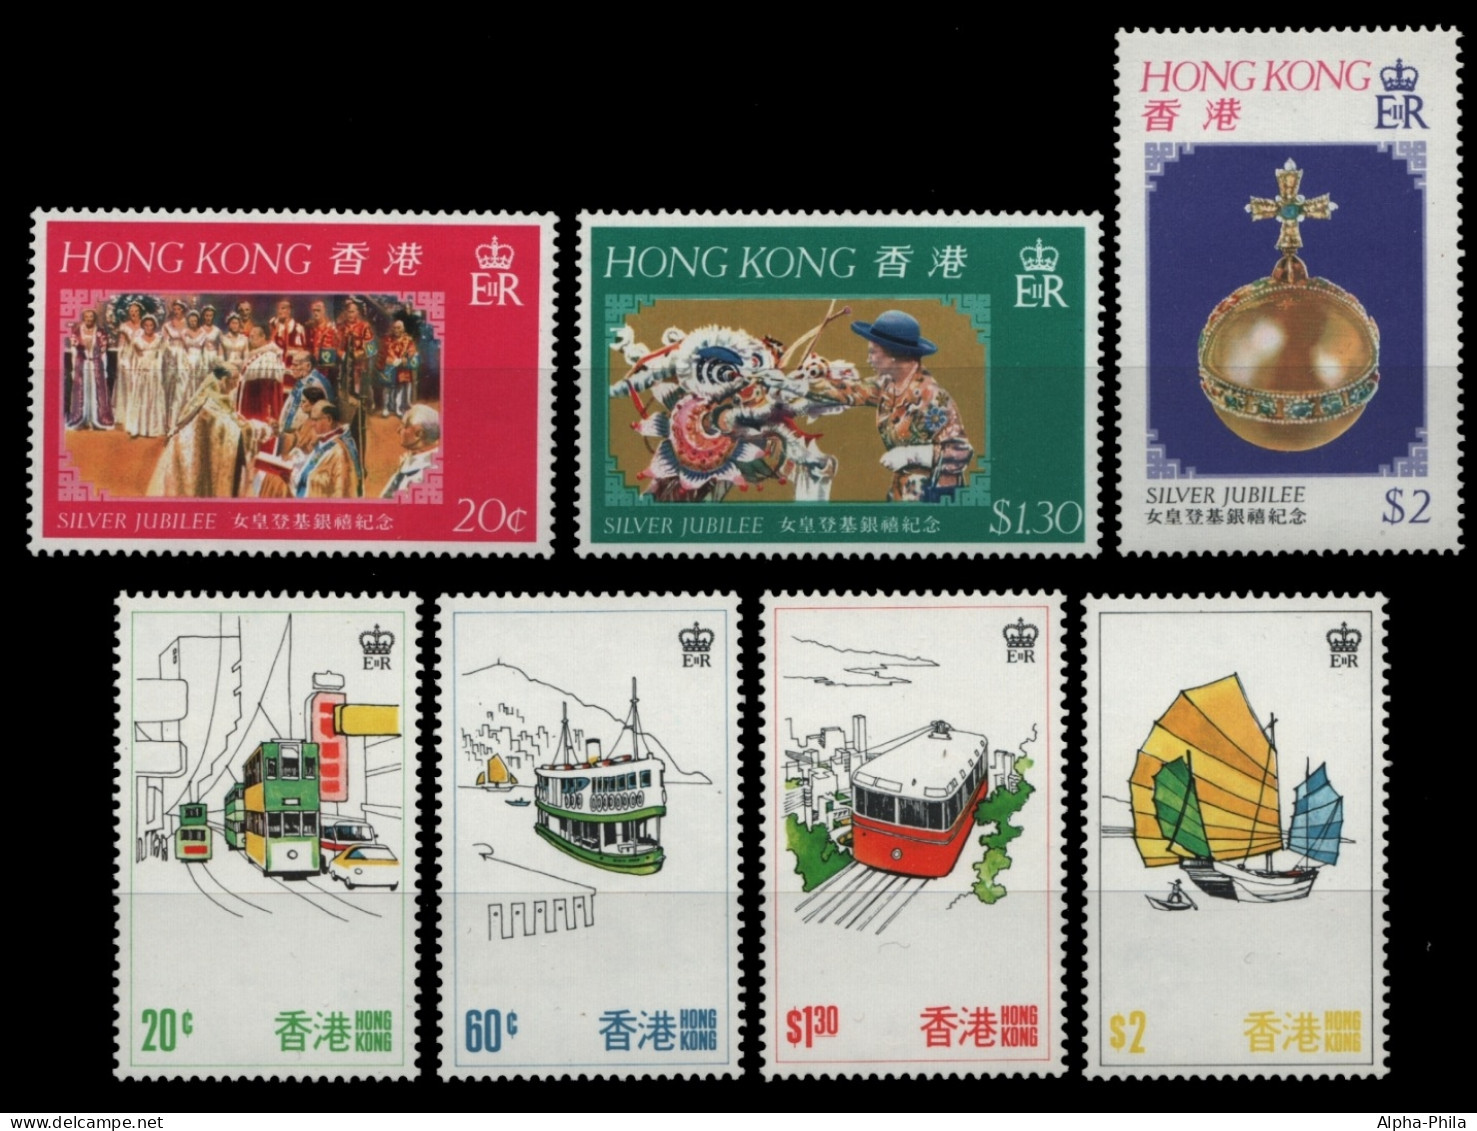 Hongkong 1977 - Mi-Nr. 331-333 & 337-340 ** - MNH - 2 Ausgaben - Unused Stamps